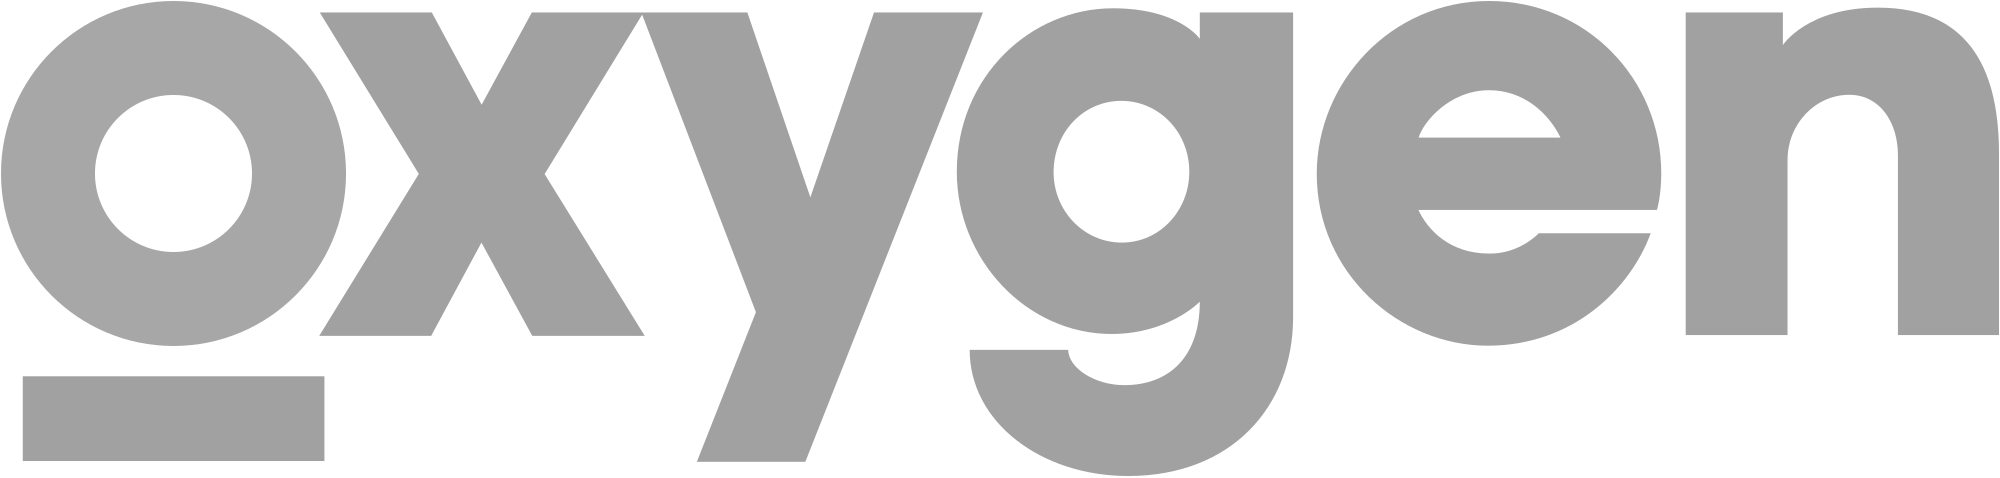 Oxygen_TV_Logo_2014.svg.png